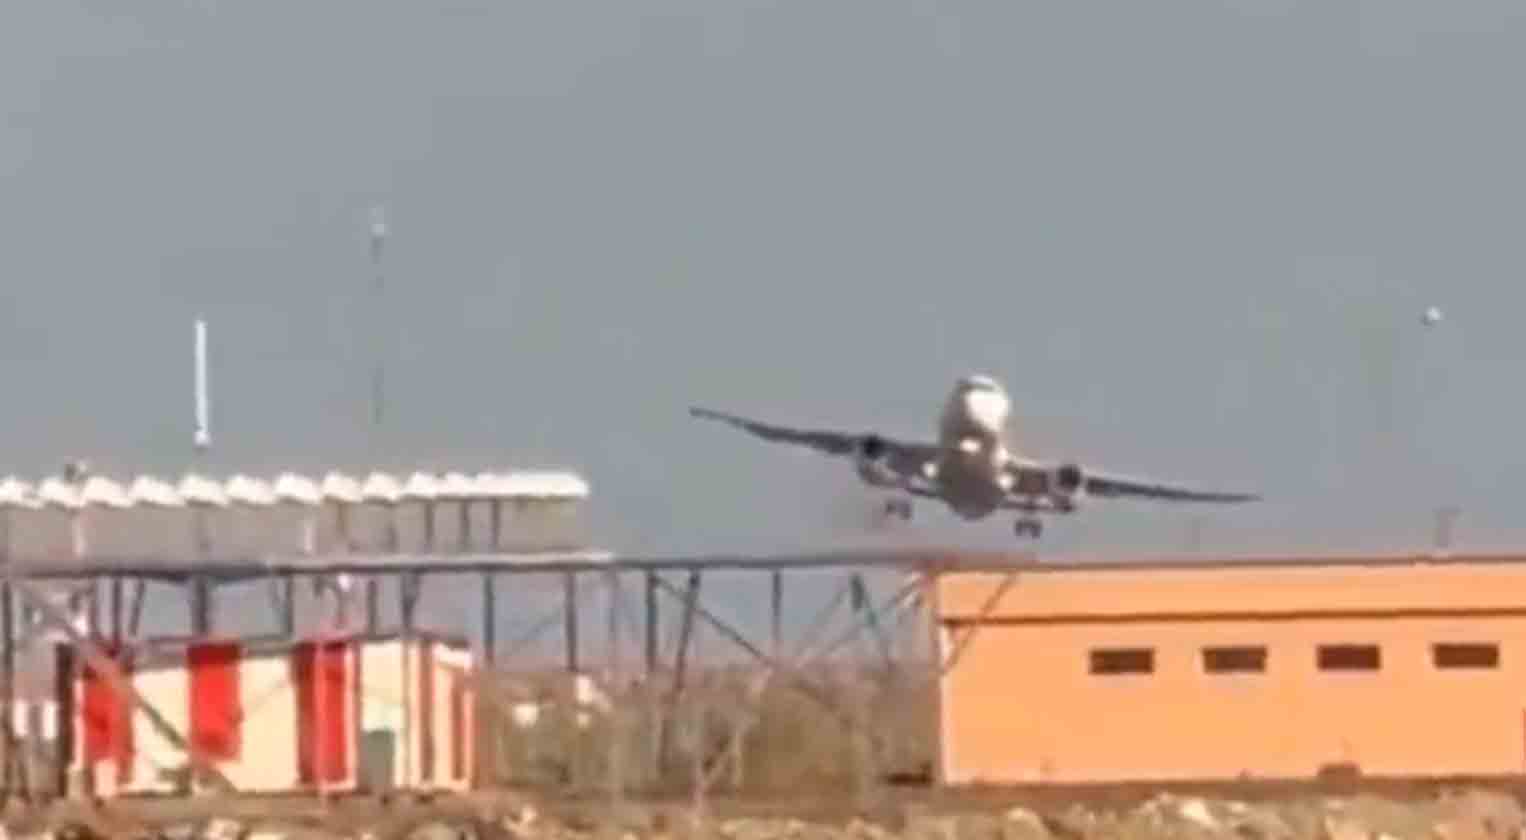 影片顯示土耳其航空公司的飛機嘗試在奧爾杜-吉雷松機場著陸的緊張時刻。照片和視頻：推特 @HavaForum 